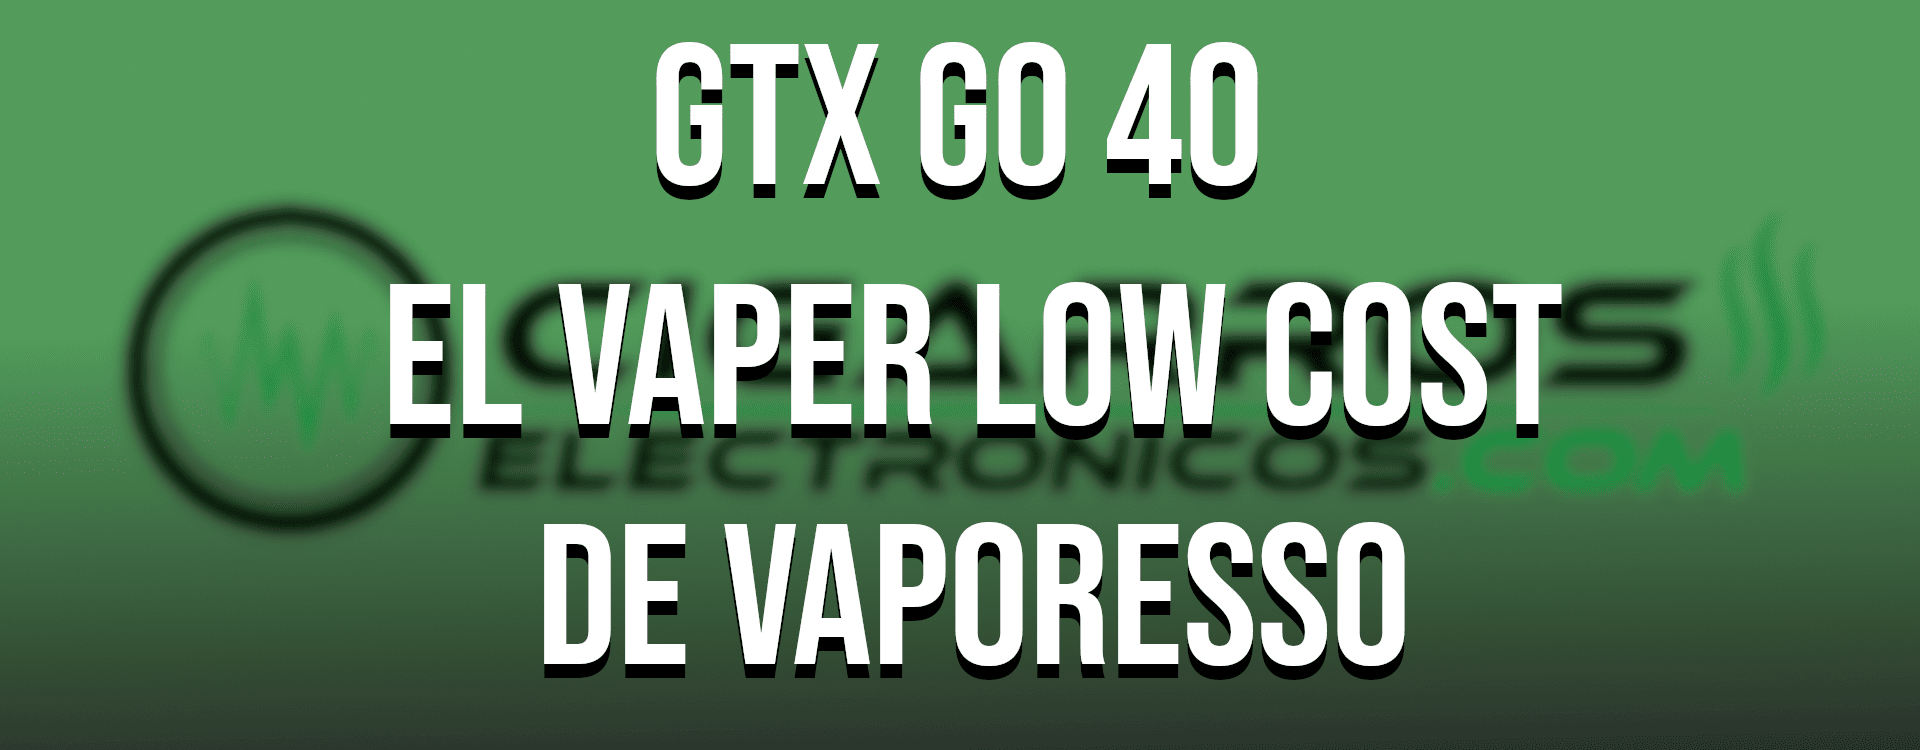 Vaporesso GTX go 40